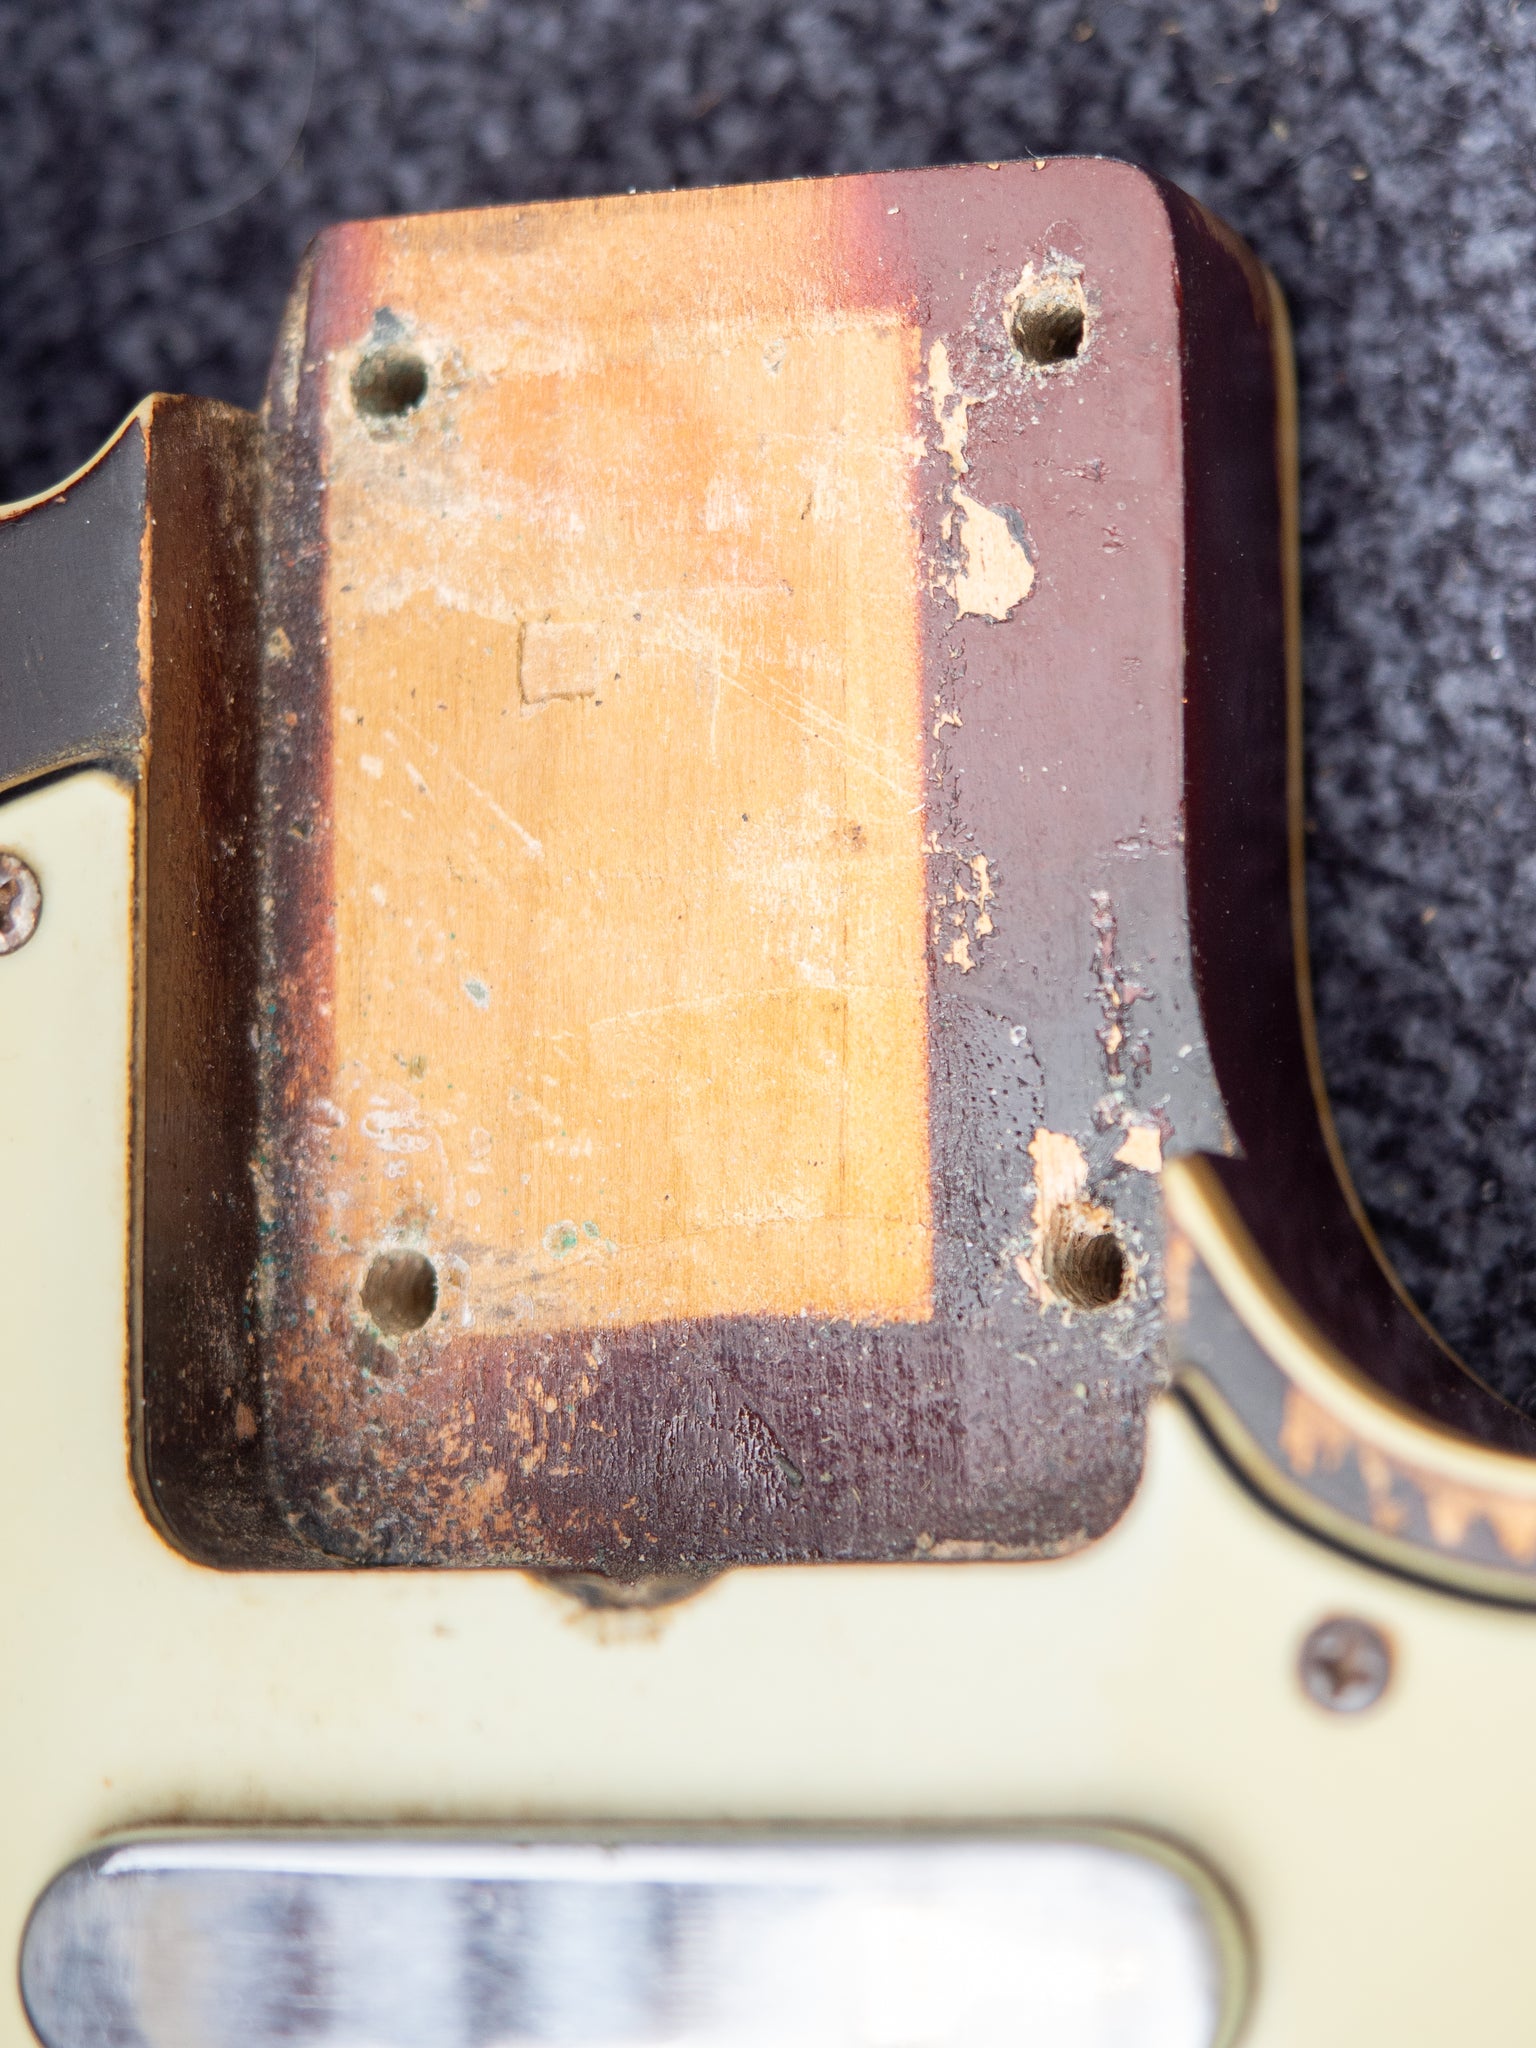 1963 Fender Custom Telecaster